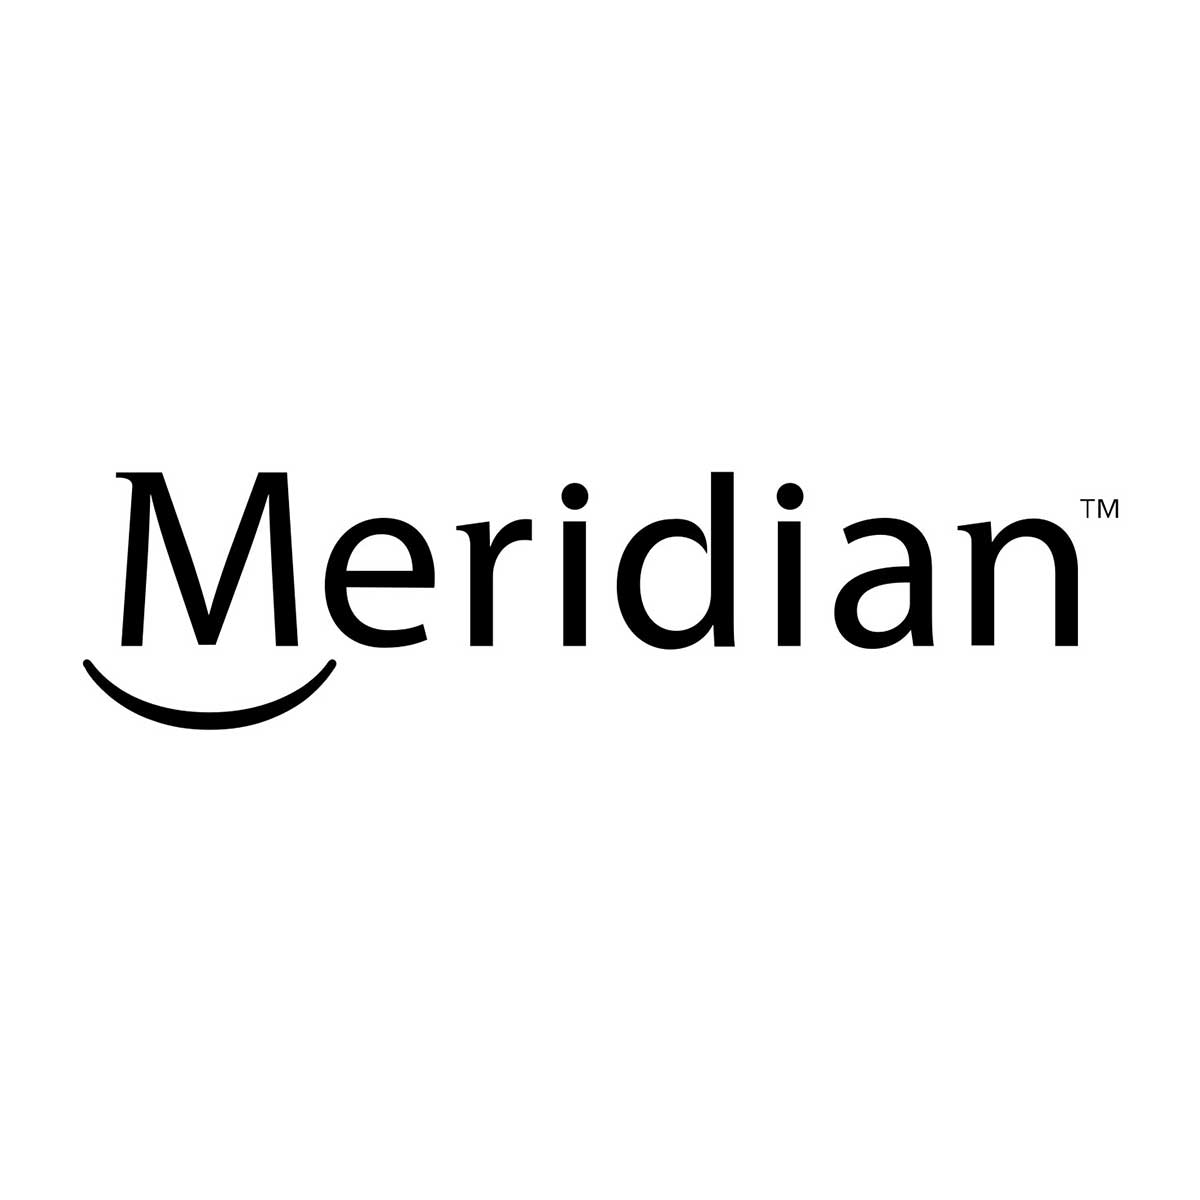 Meridian.jpg